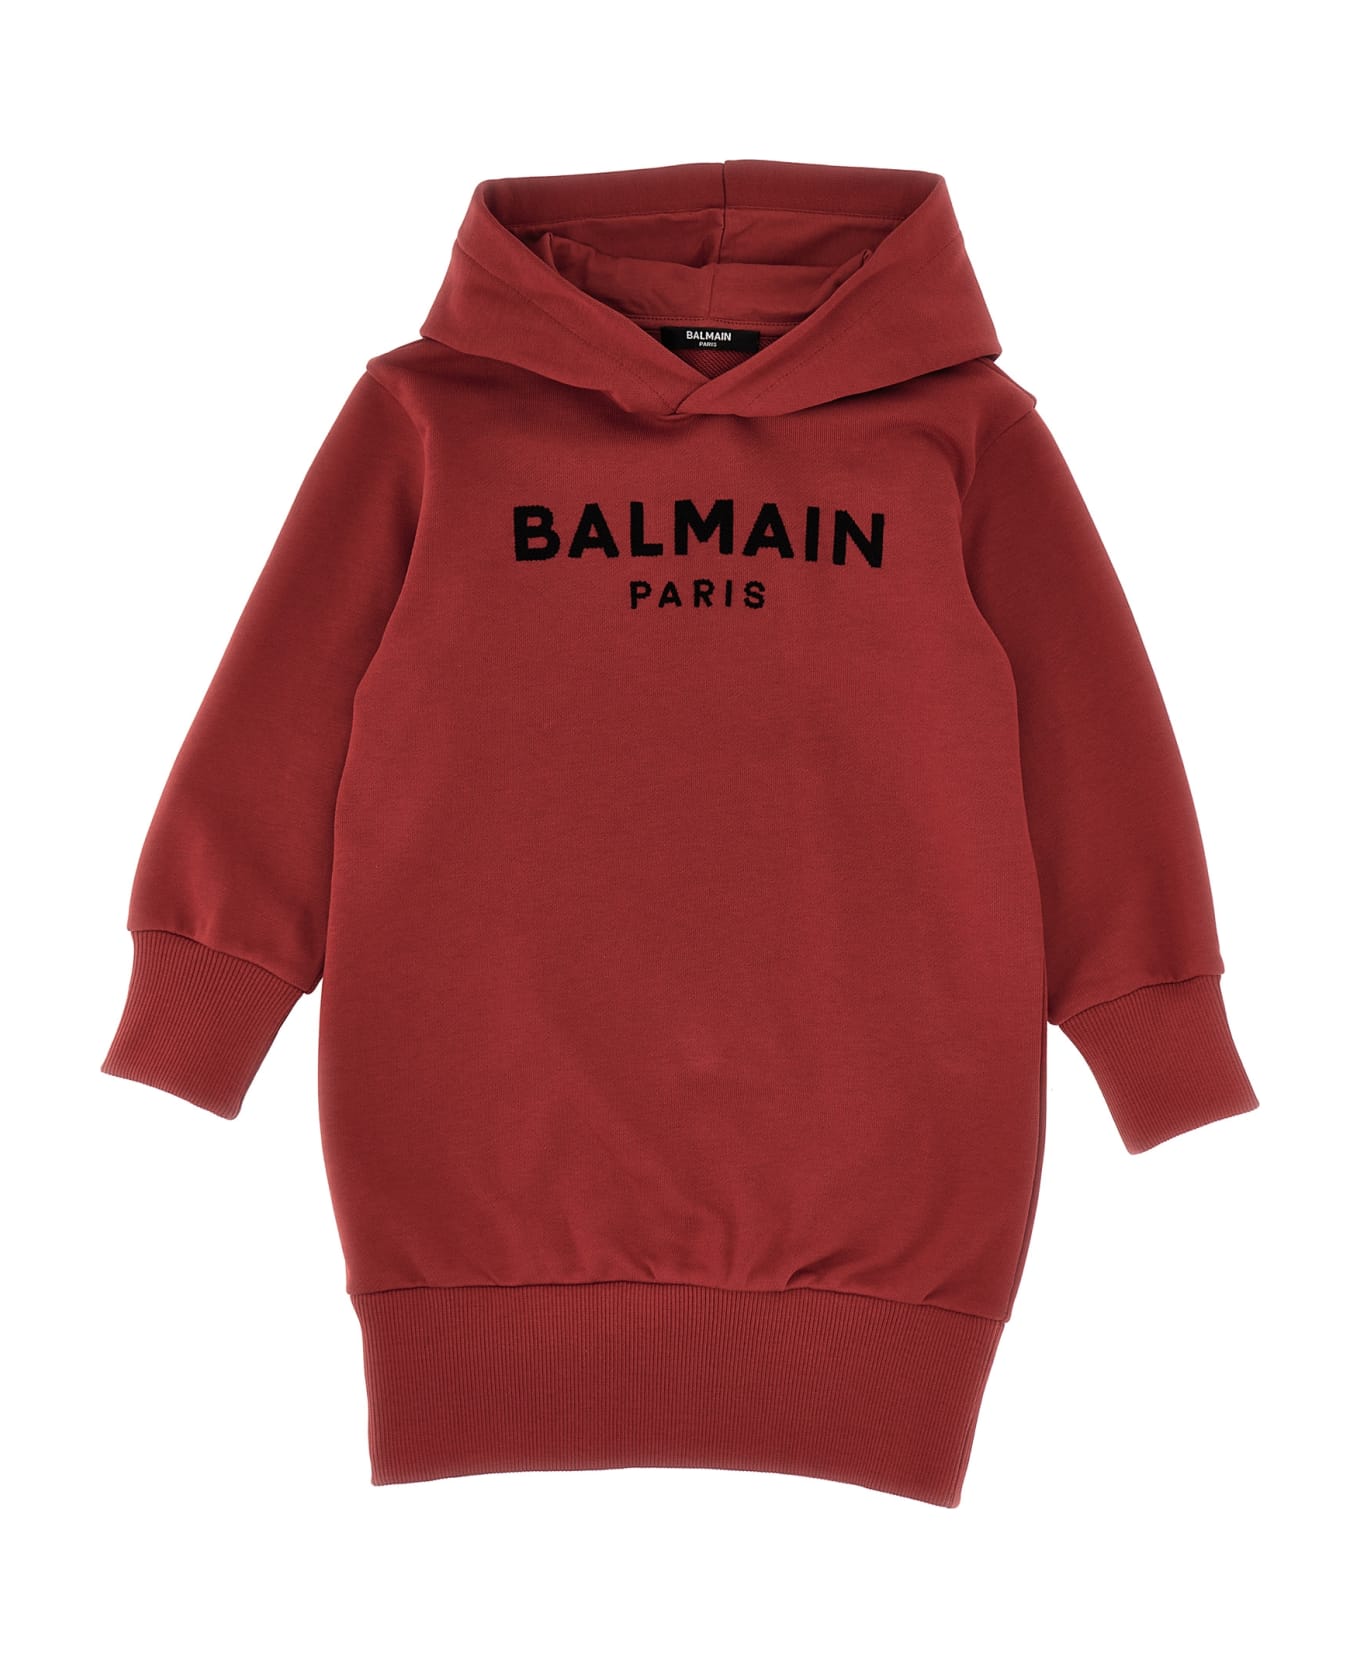 Balmain Logo Embroidery Hooded Dress - Bordeaux